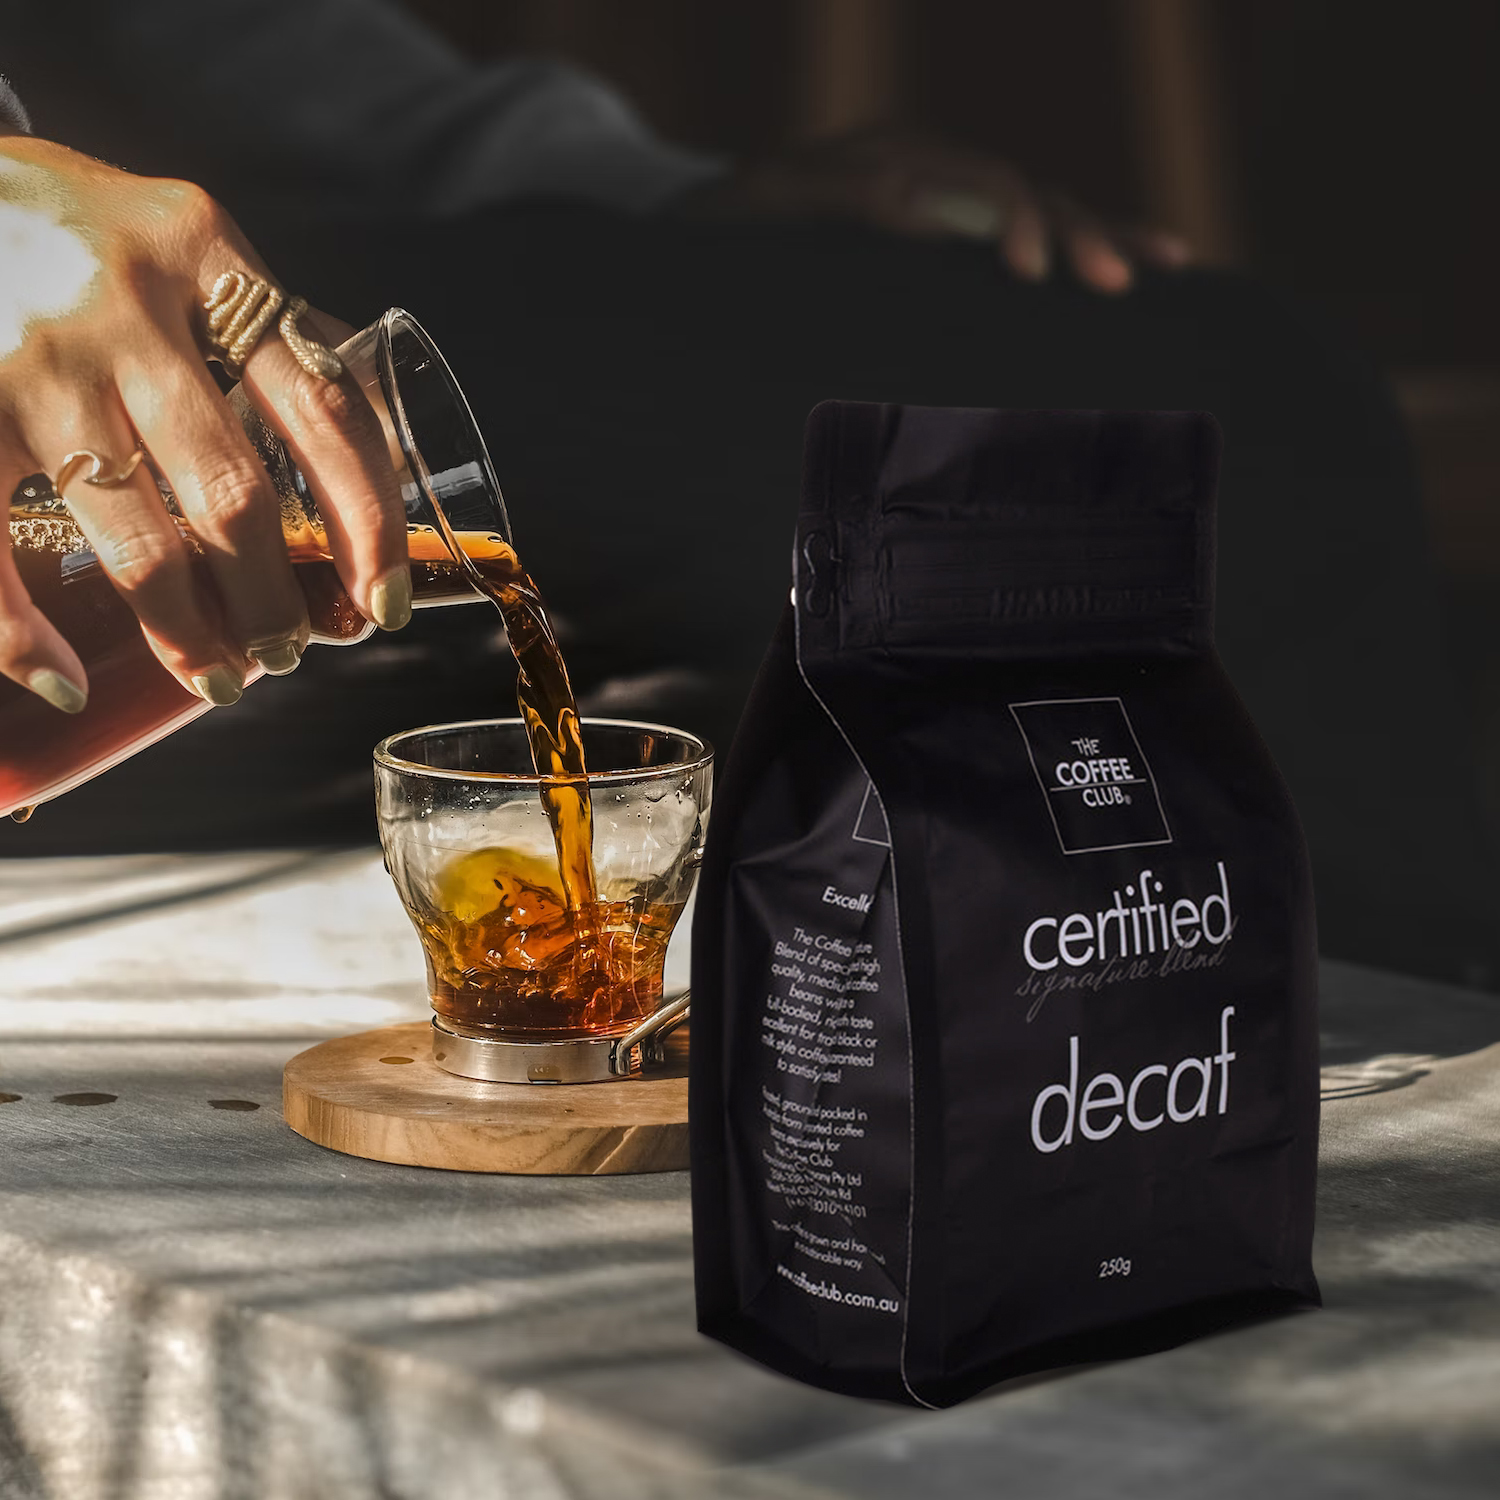 Bolsos de empaquetado impresos personalizados del grano de café de la huella baja del carbono con la válvula